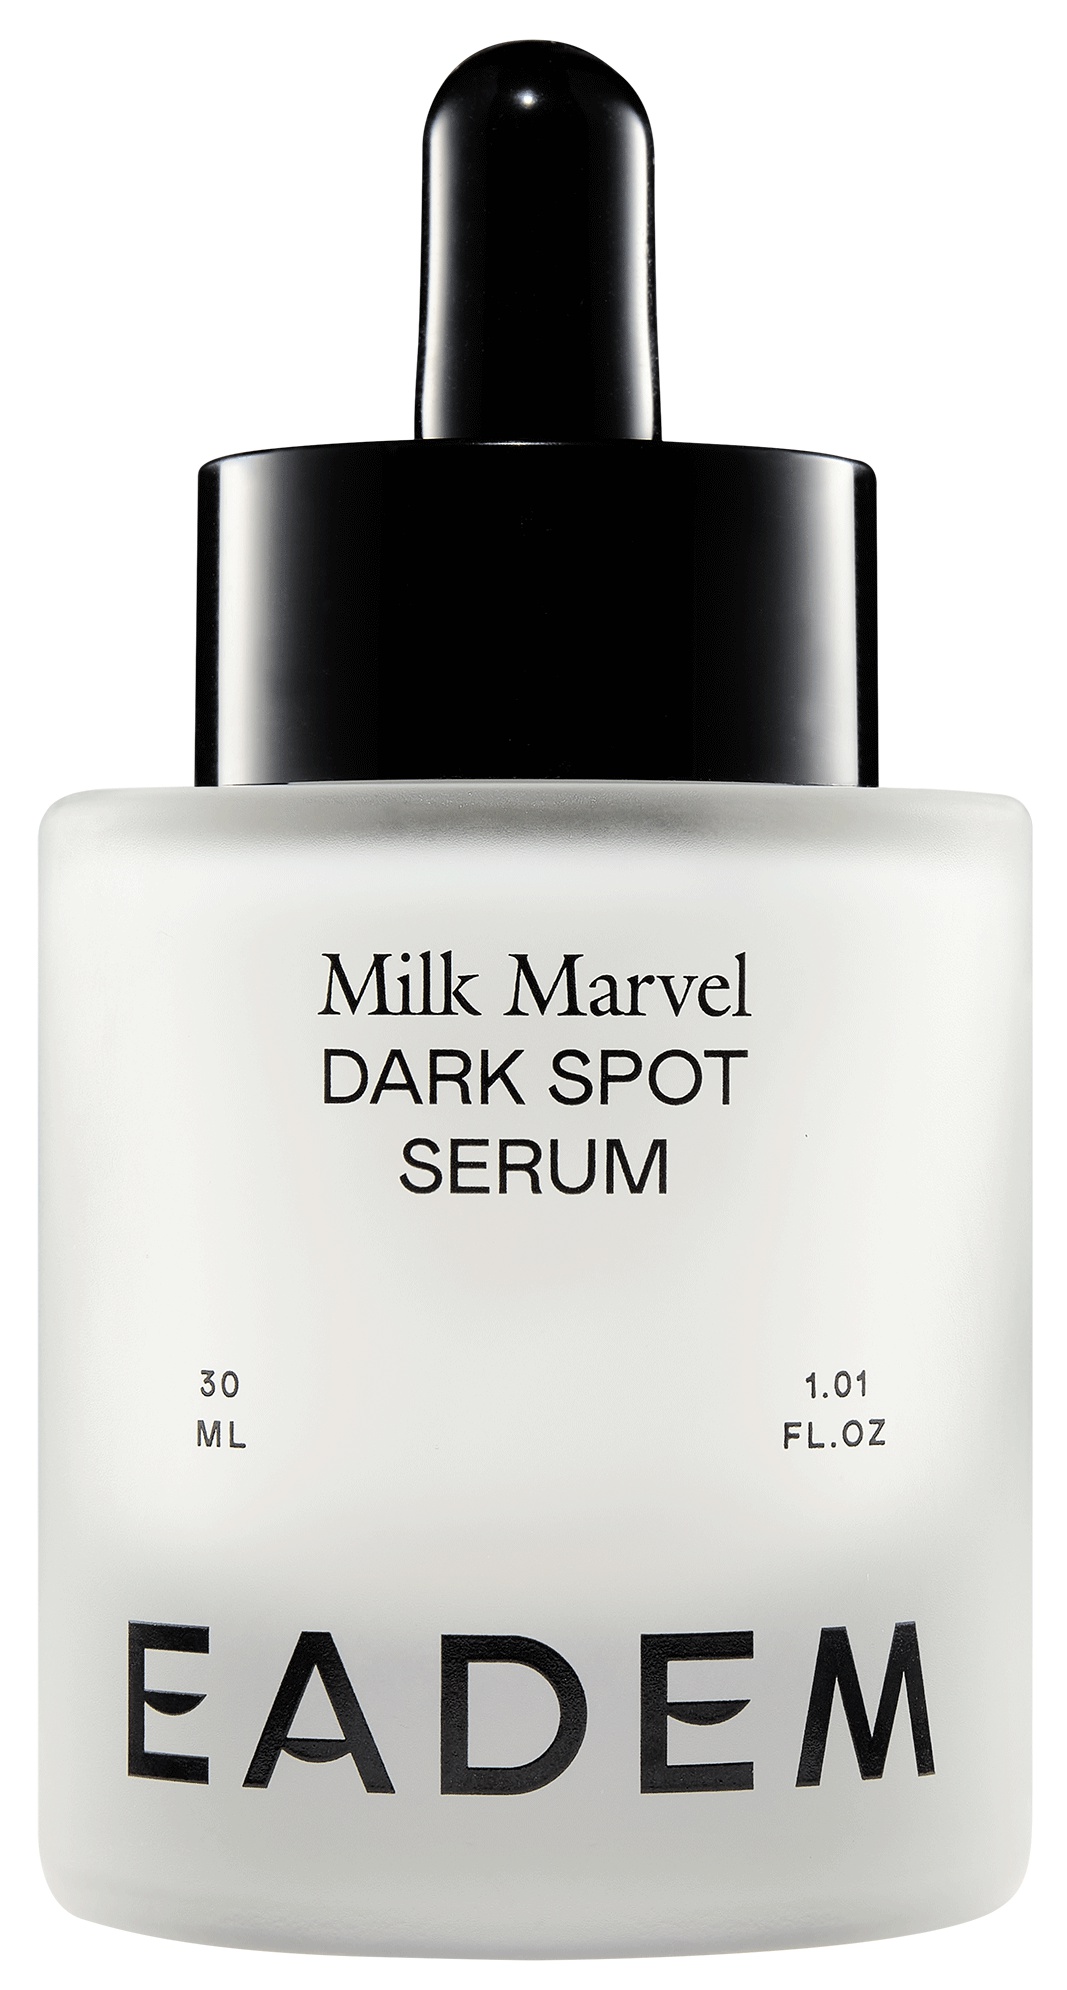 EADEM Milk Marvel Dark Spot Serum